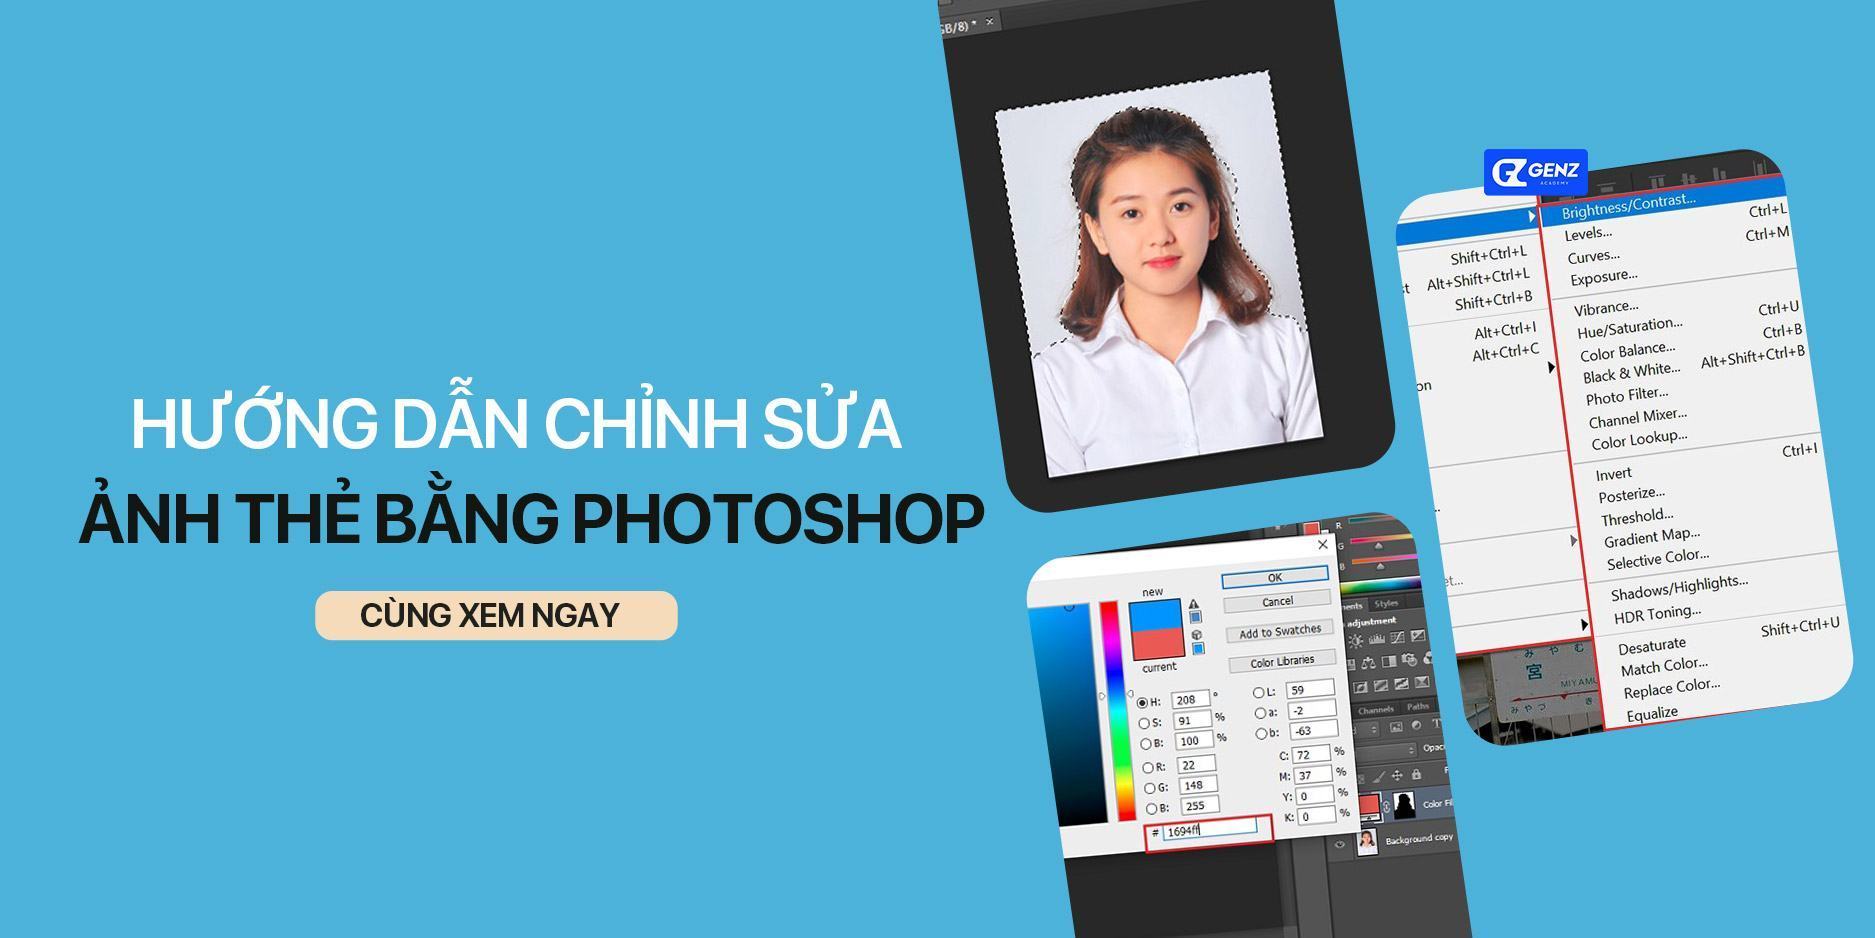 Hướng dẫn chỉnh sửa ảnh thẻ bằng photoshop chuyên nghiệp - GenZ Academy-GenZ Academy